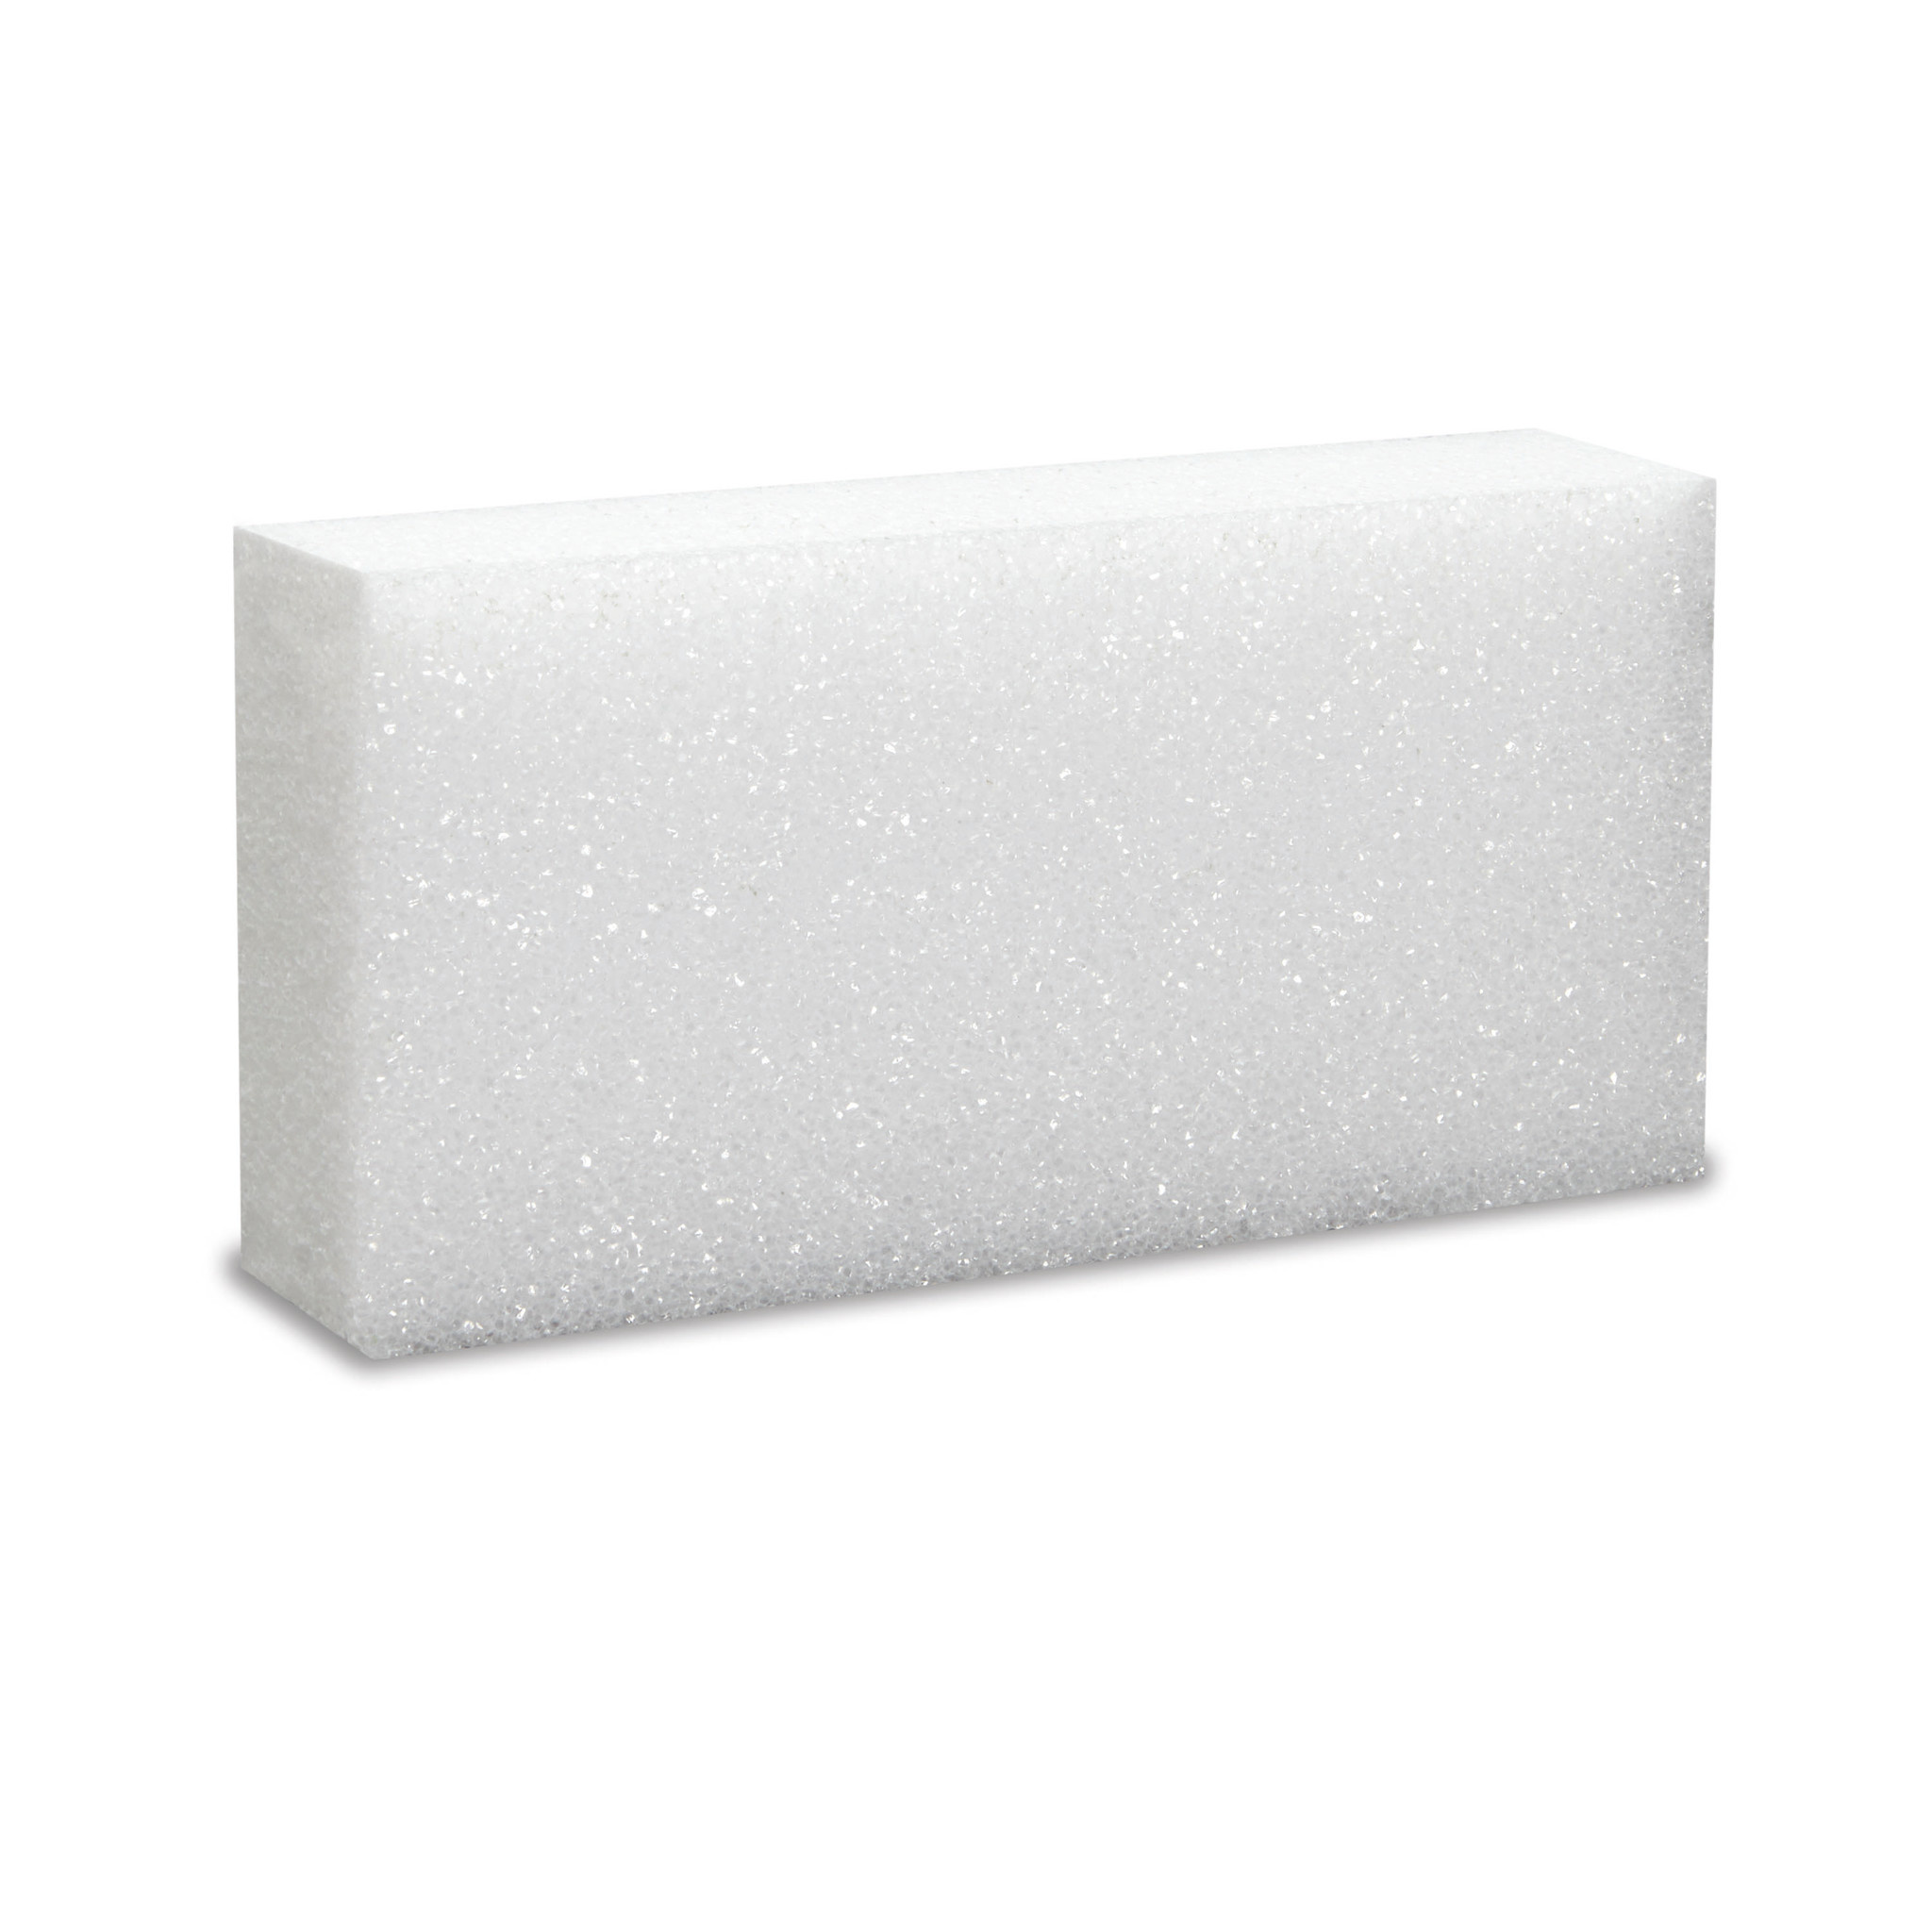 Styrofoam, Houston Foam Styrofoam White 4x8x4